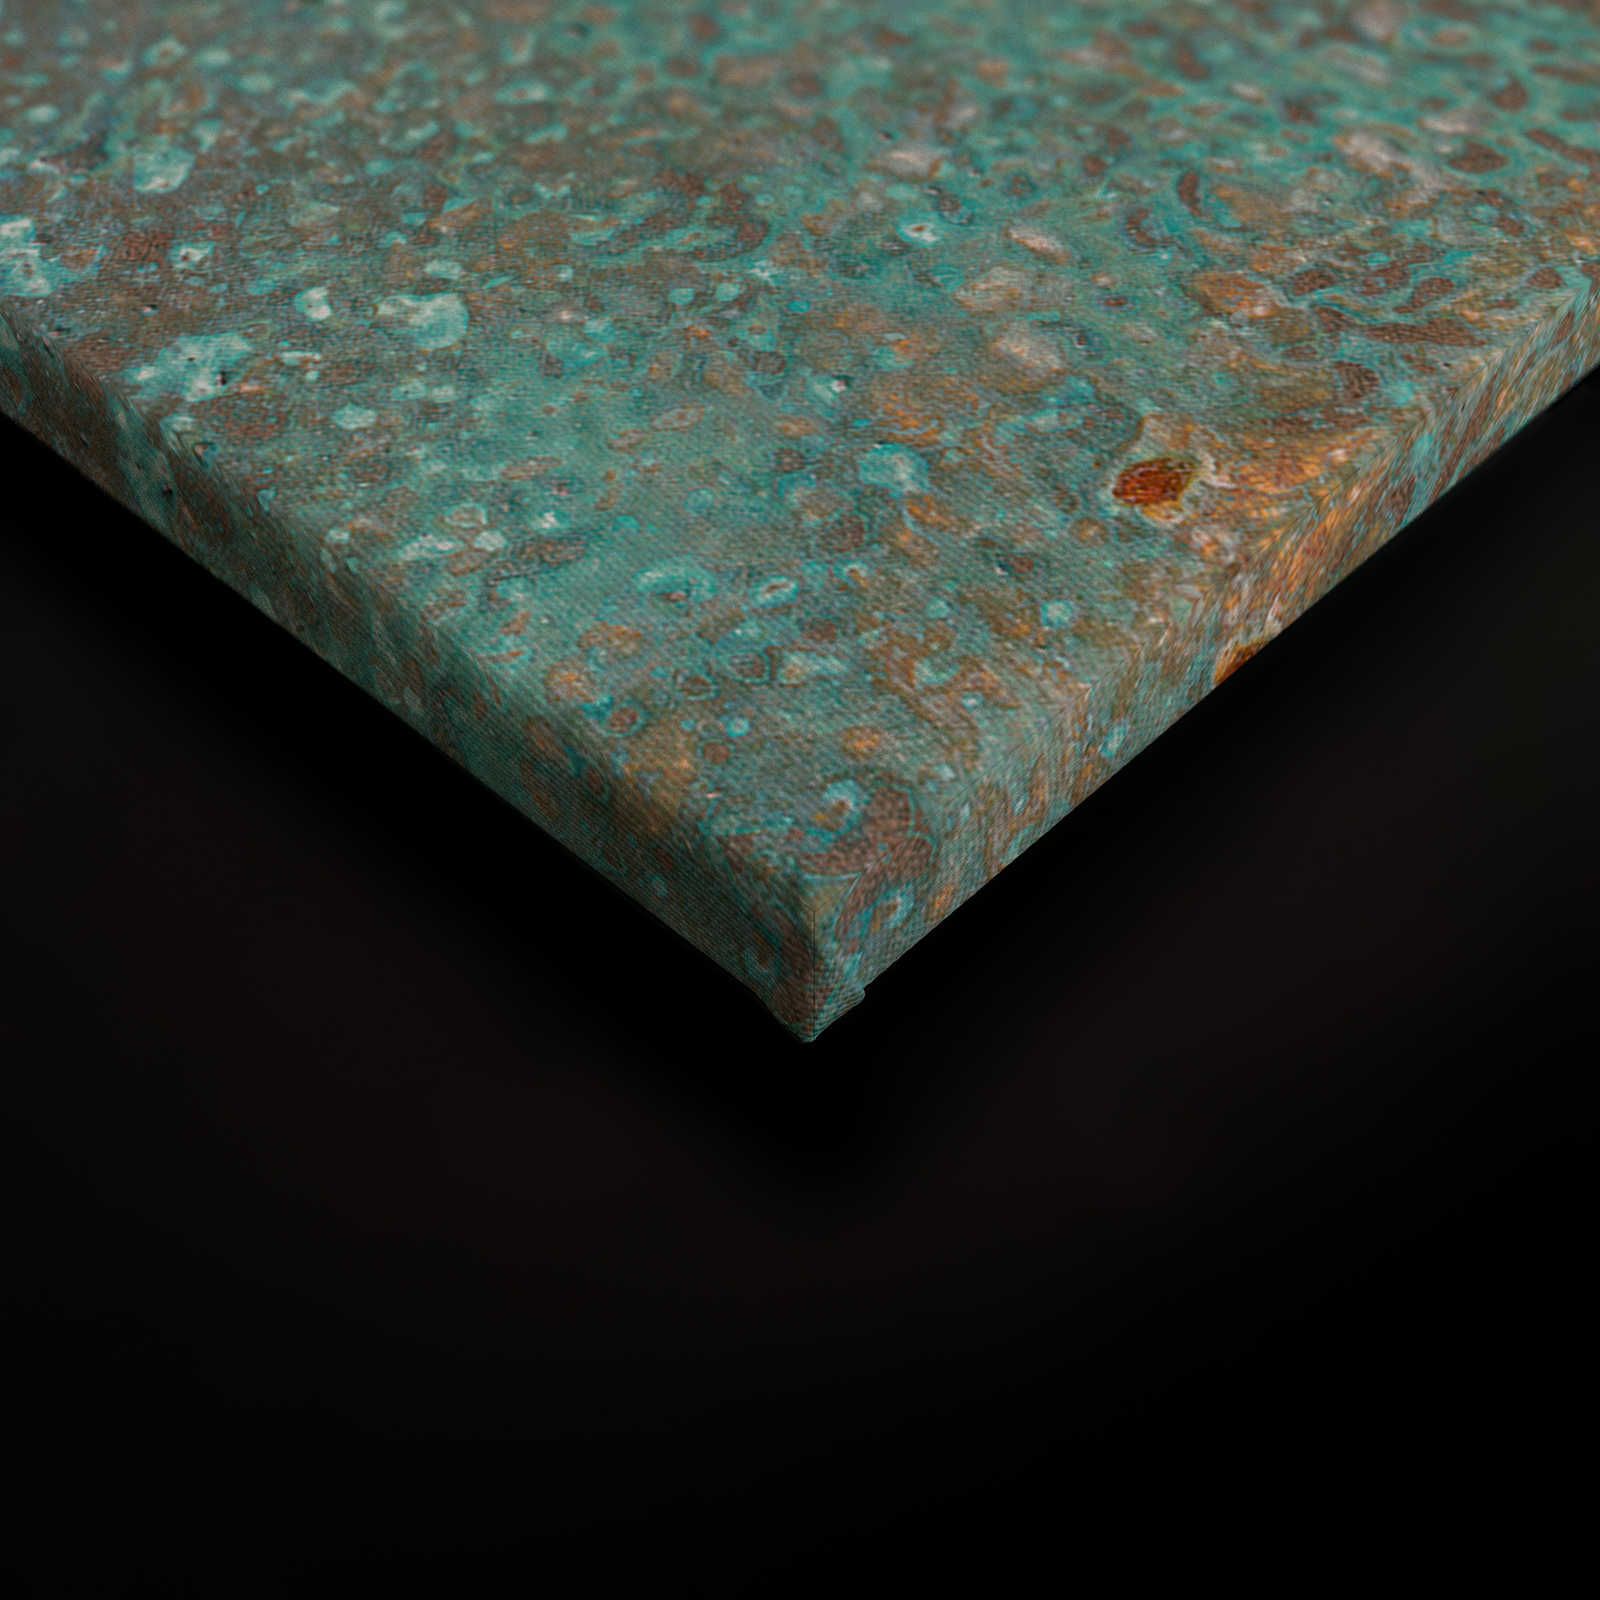             Metalloptik Leinwandbild türkise Patina mit Rost – 0,90 m x 0,60 m
        